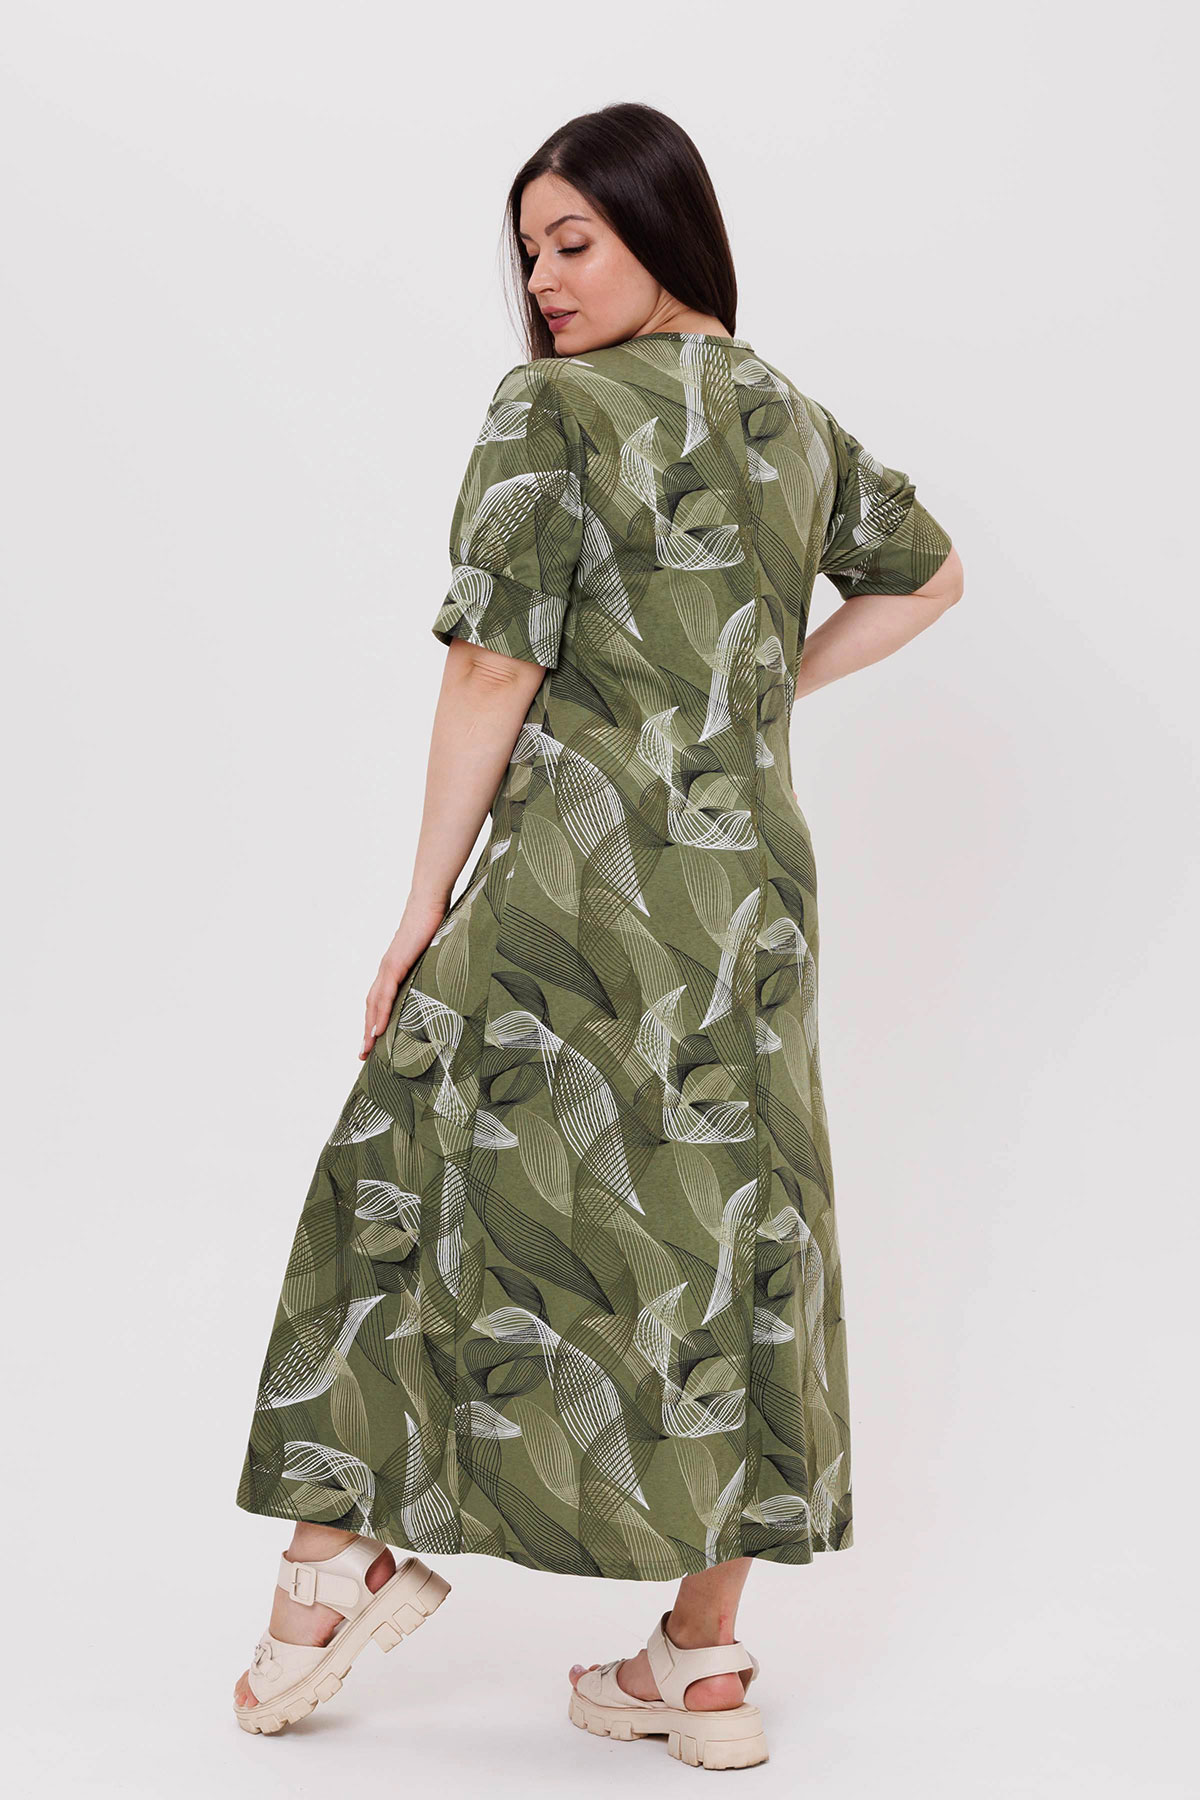 Жен. платье повседневное арт. 23-0541 Зеленый р. 54 Моделлини, размер 54 - фото 5